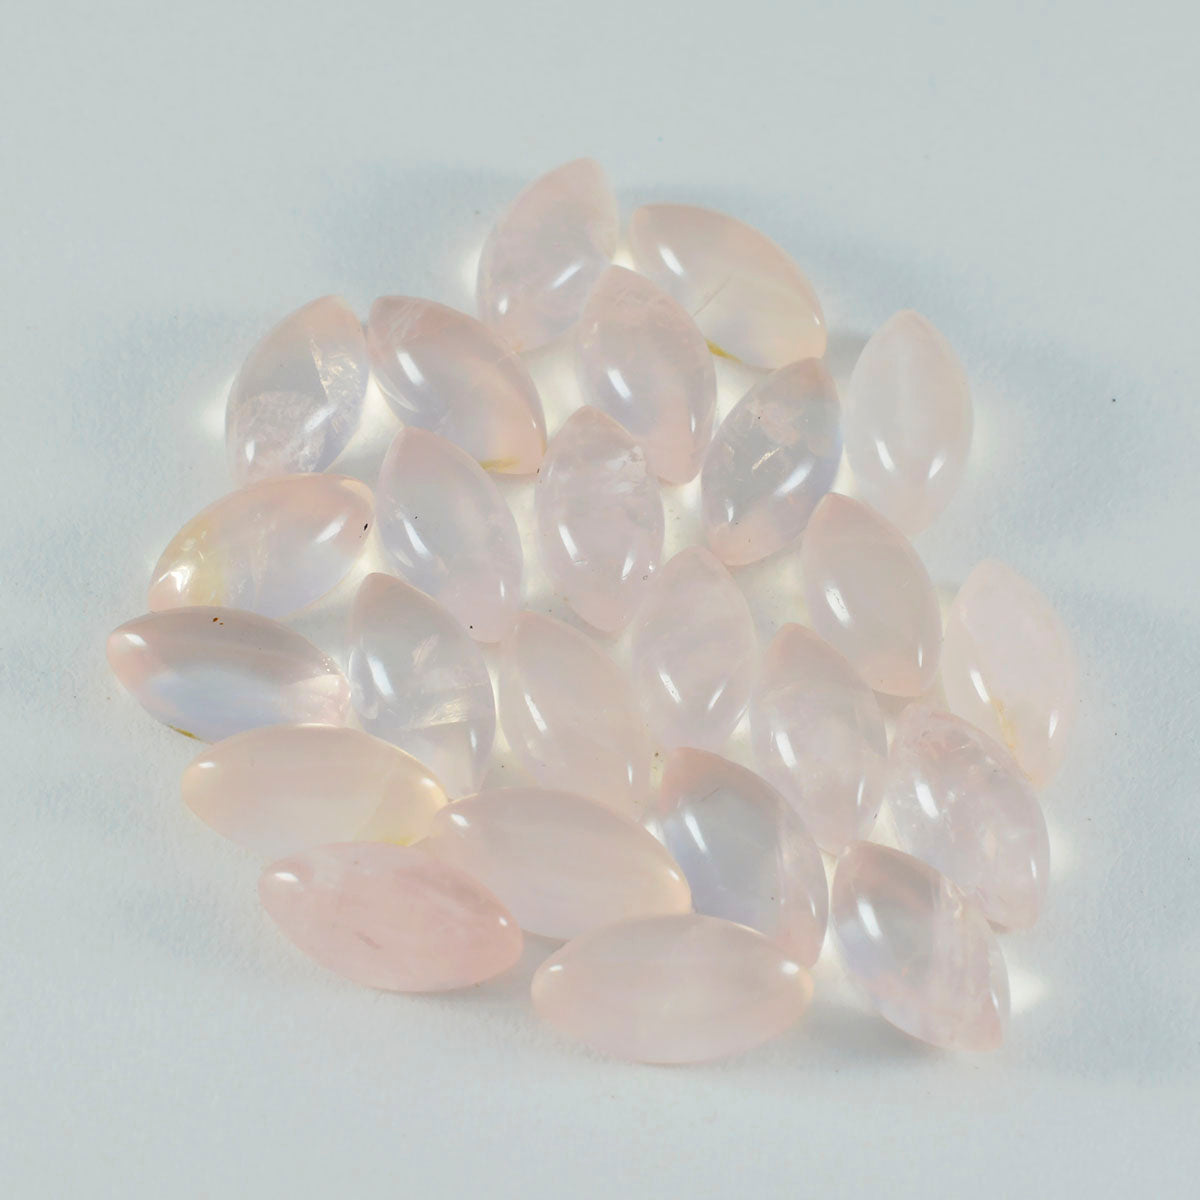 Riyogems 1PC Pink Rose Quartz Cabochon 7x14 mm Marquise Shape pretty Quality Loose Gems